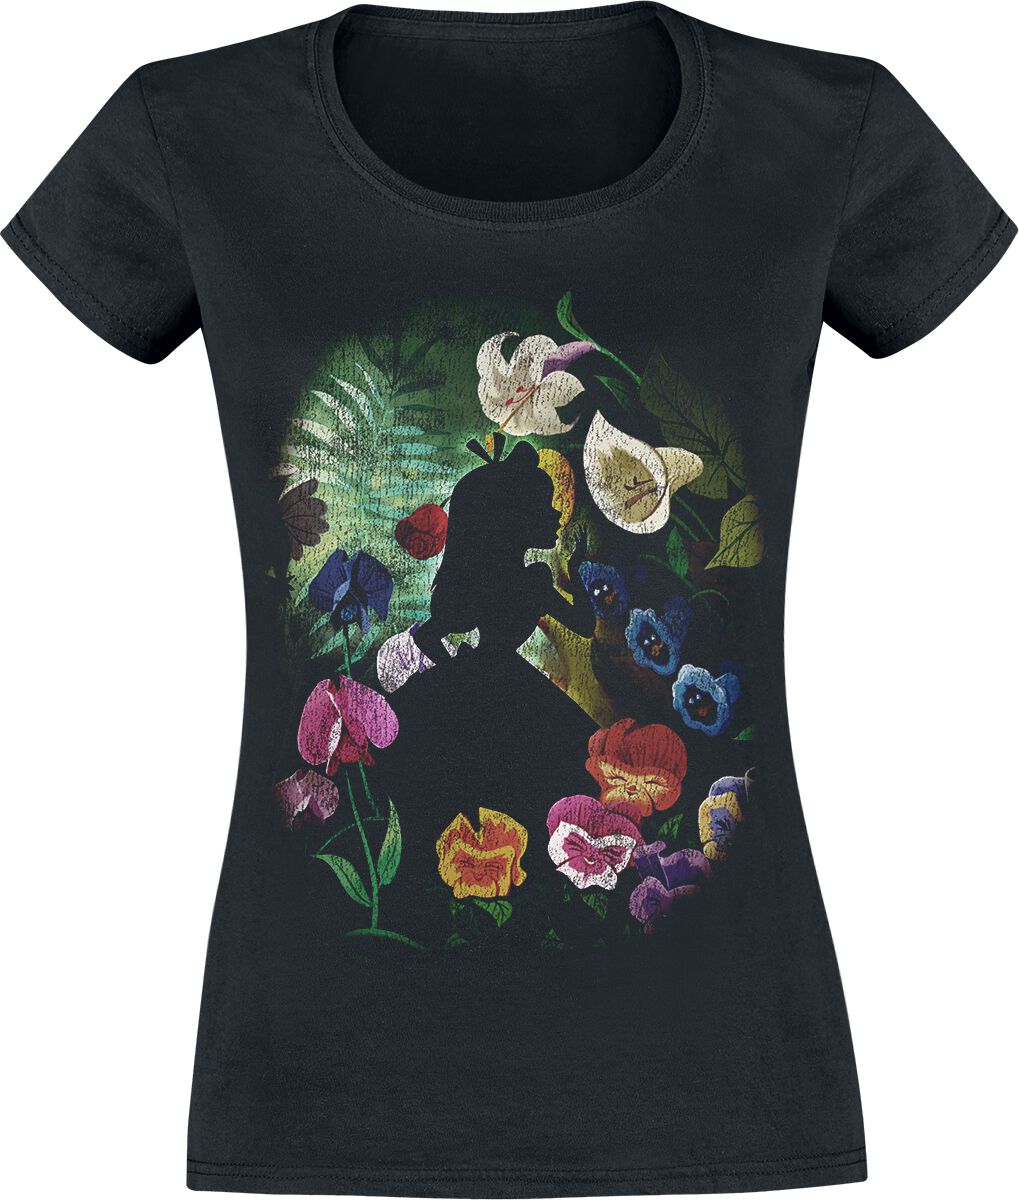 Alice im Wunderland - Disney T-Shirt - Black Flower - XS bis XXL - für Damen - Größe S - schwarz  - Lizenzierter Fanartikel